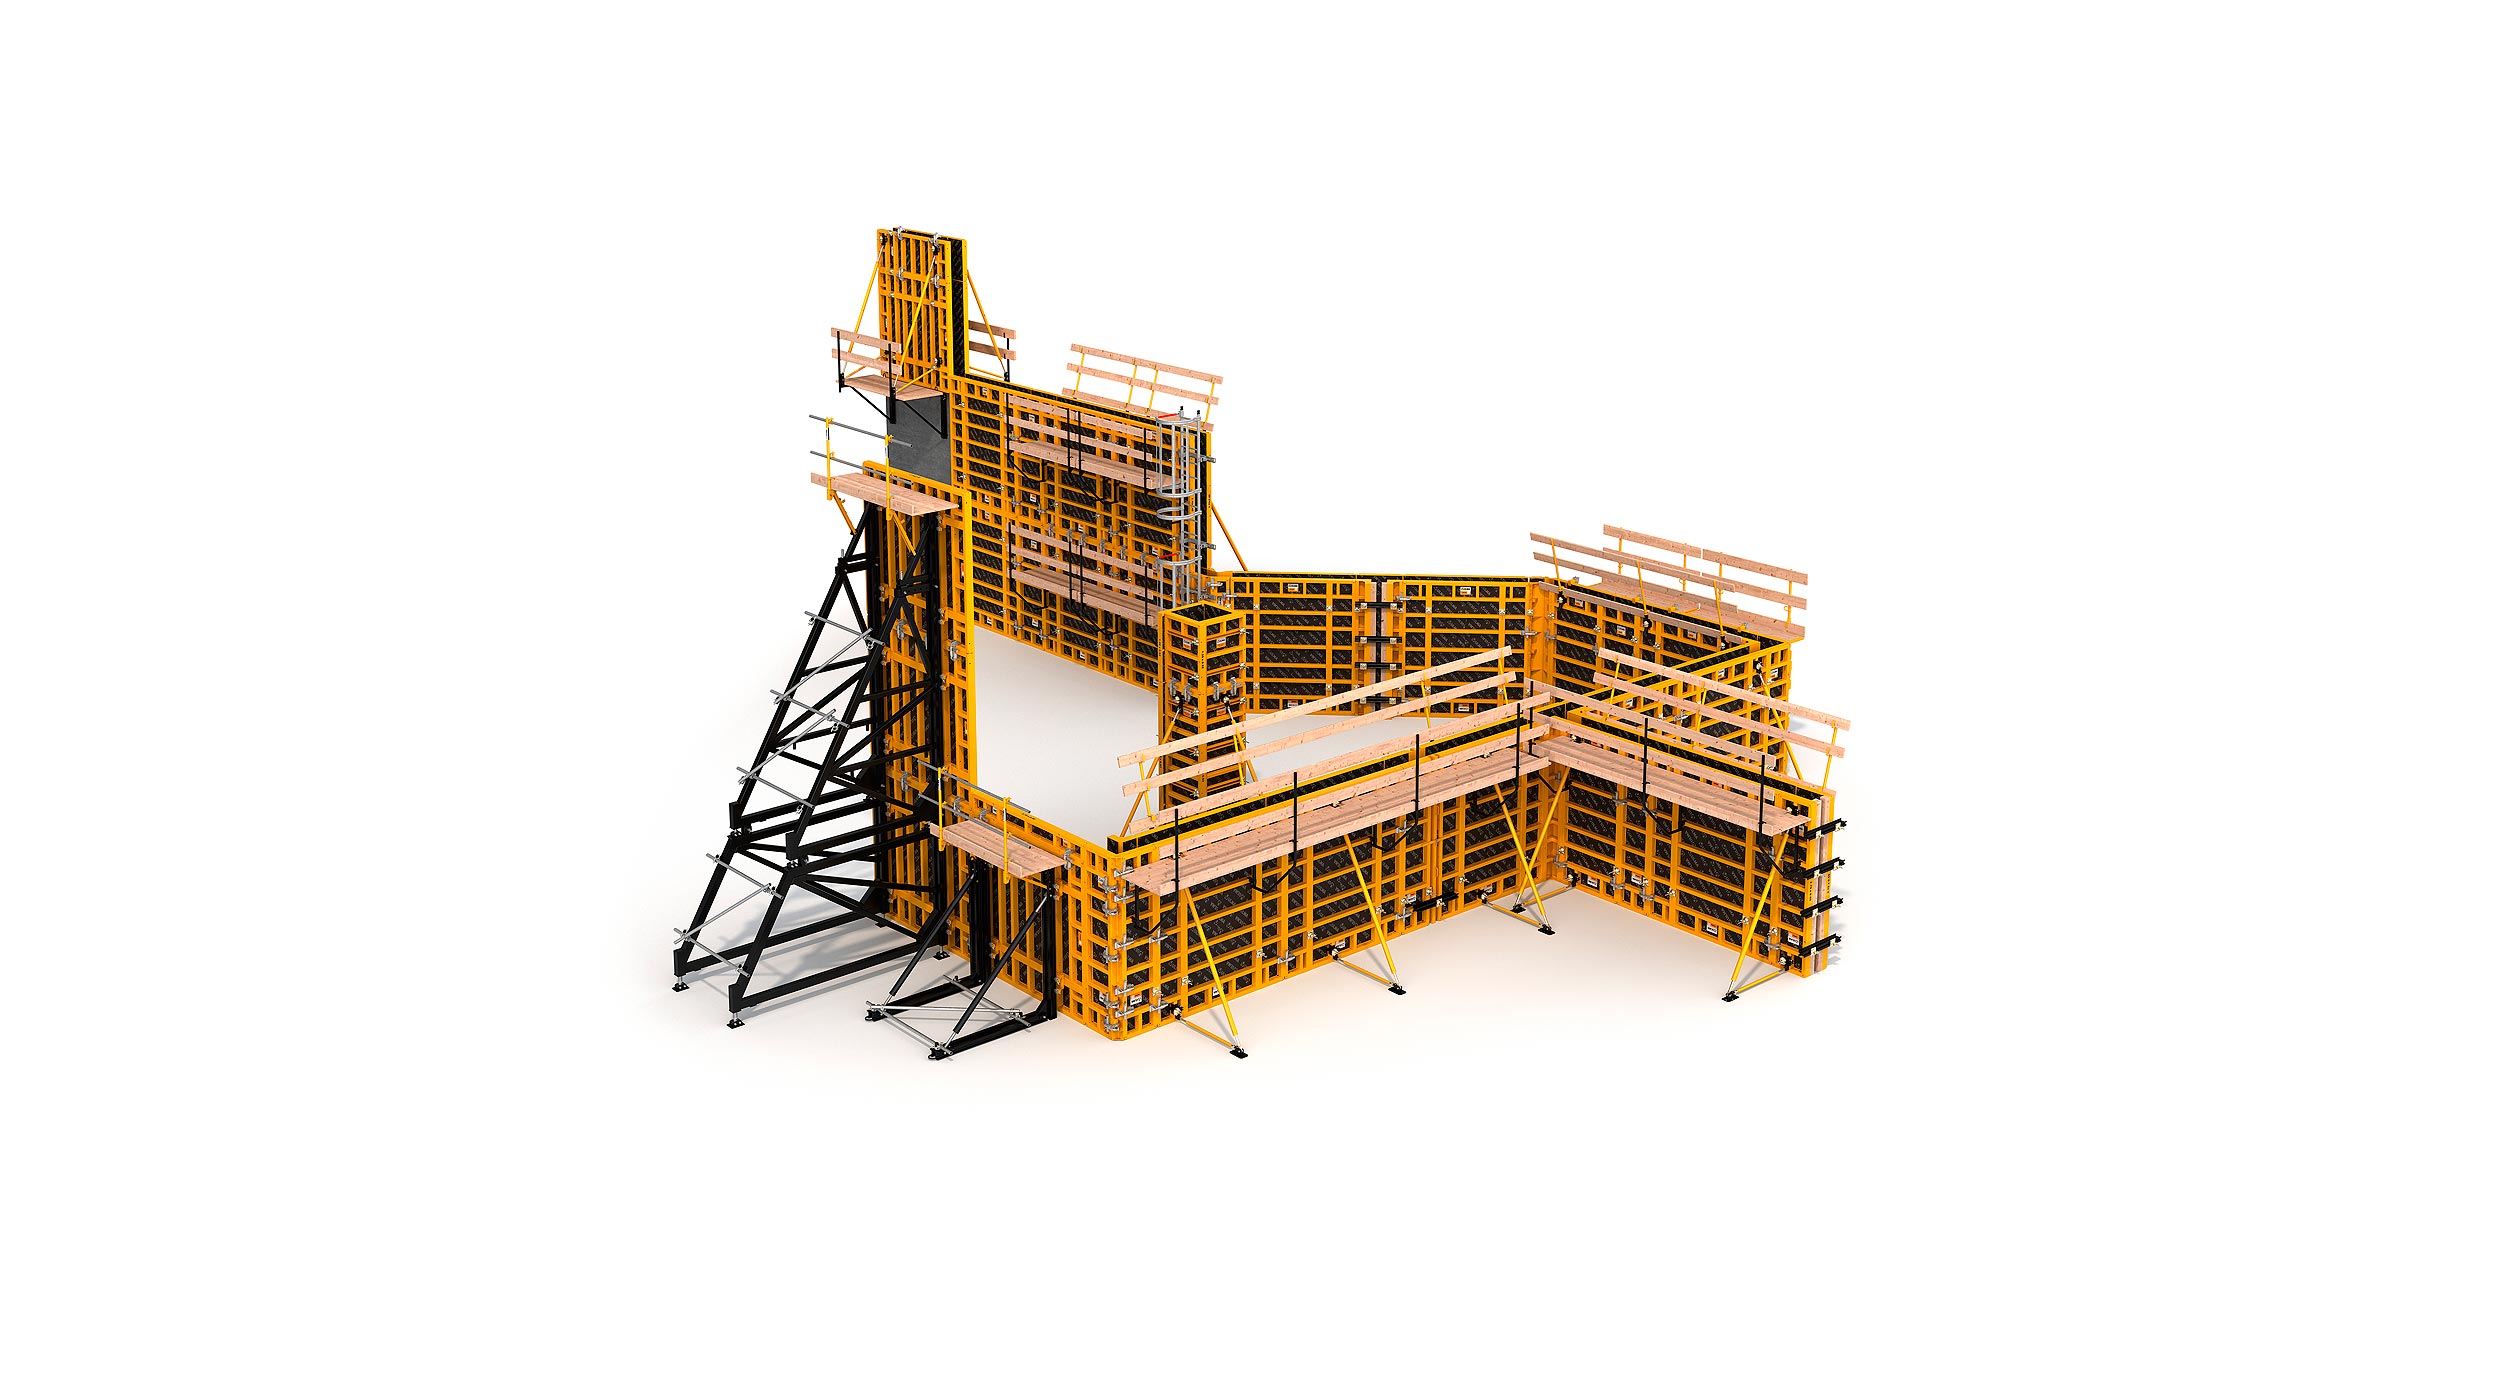 Sistema de encofrado modular para la construcción de todo tipo de estructuras verticales de concreto. Destaca su alto rendimiento con el  mínimo coste en mano de obra.